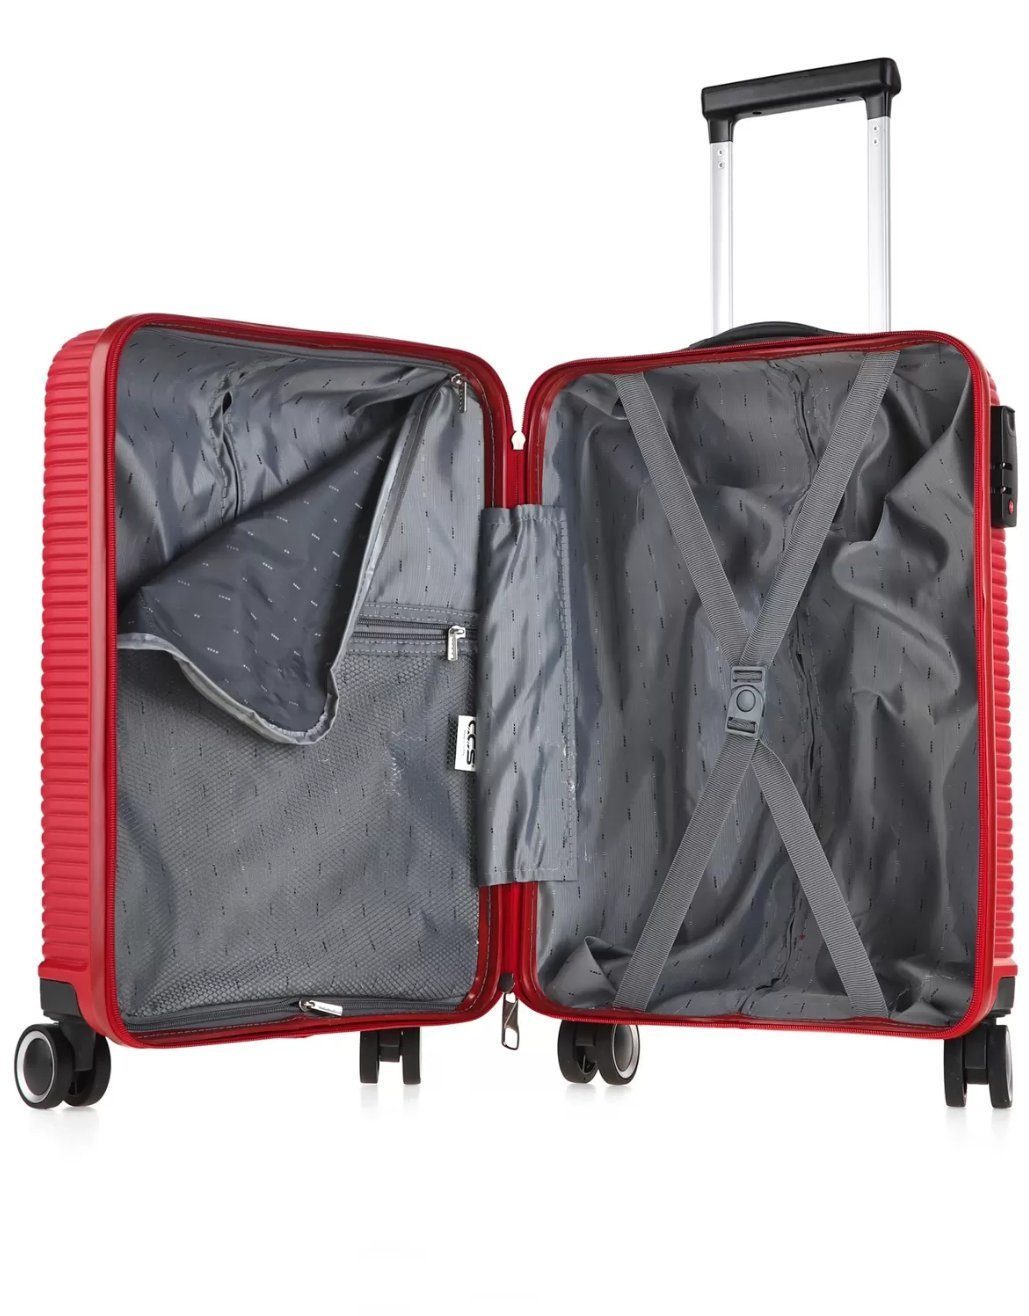 Rot (3 - Koffer Kofferset, großen mittleren Koffer) + Handgepäck + teilig, CCS